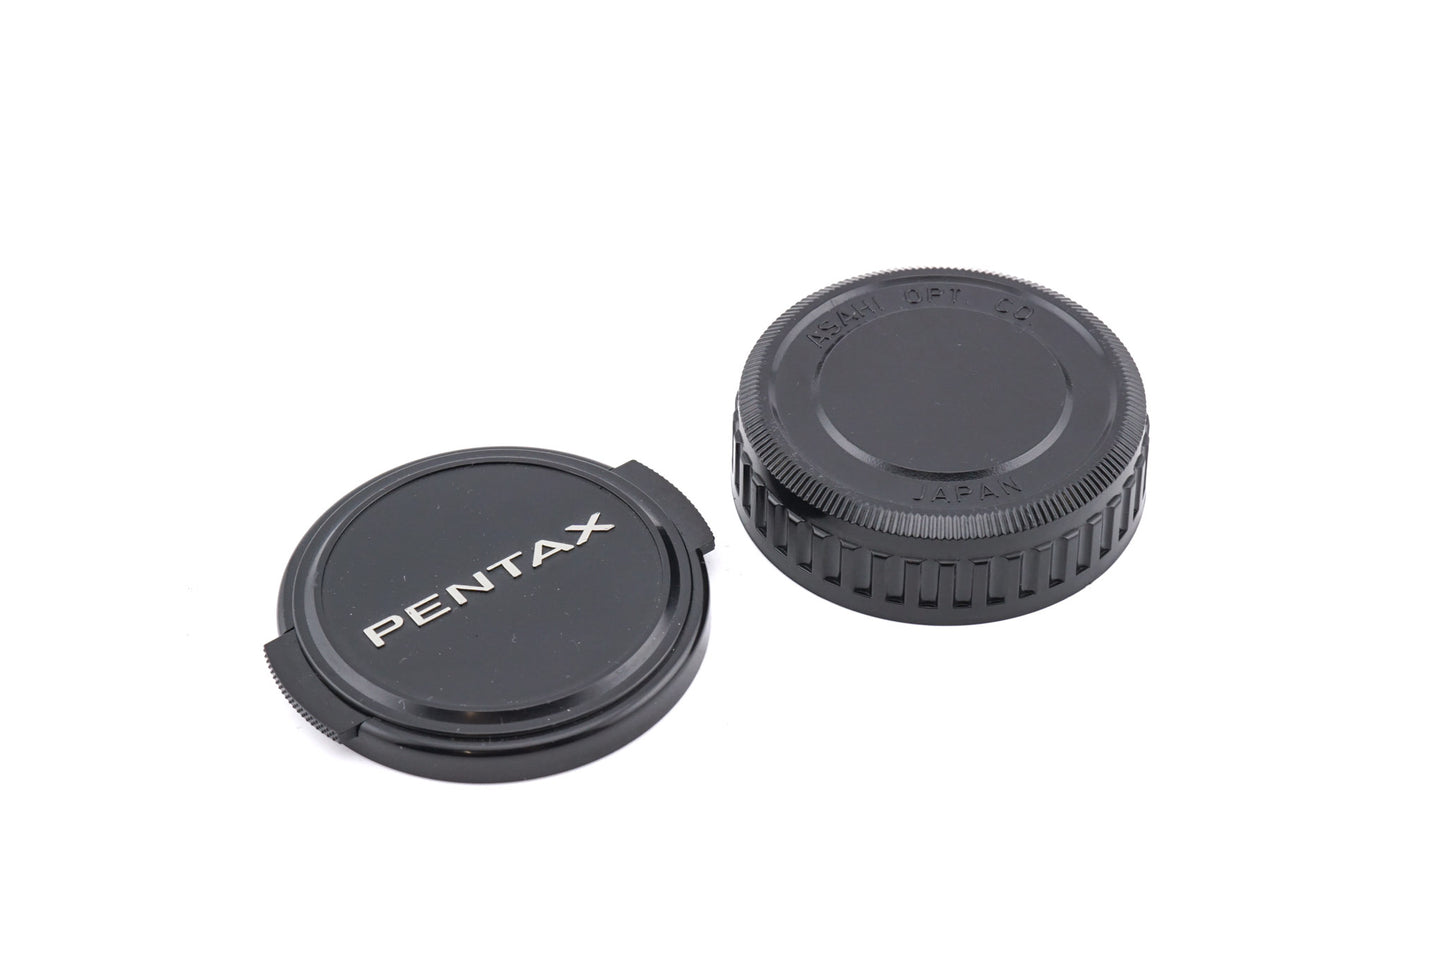 Pentax 135mm f3.5 SMC Pentax-M